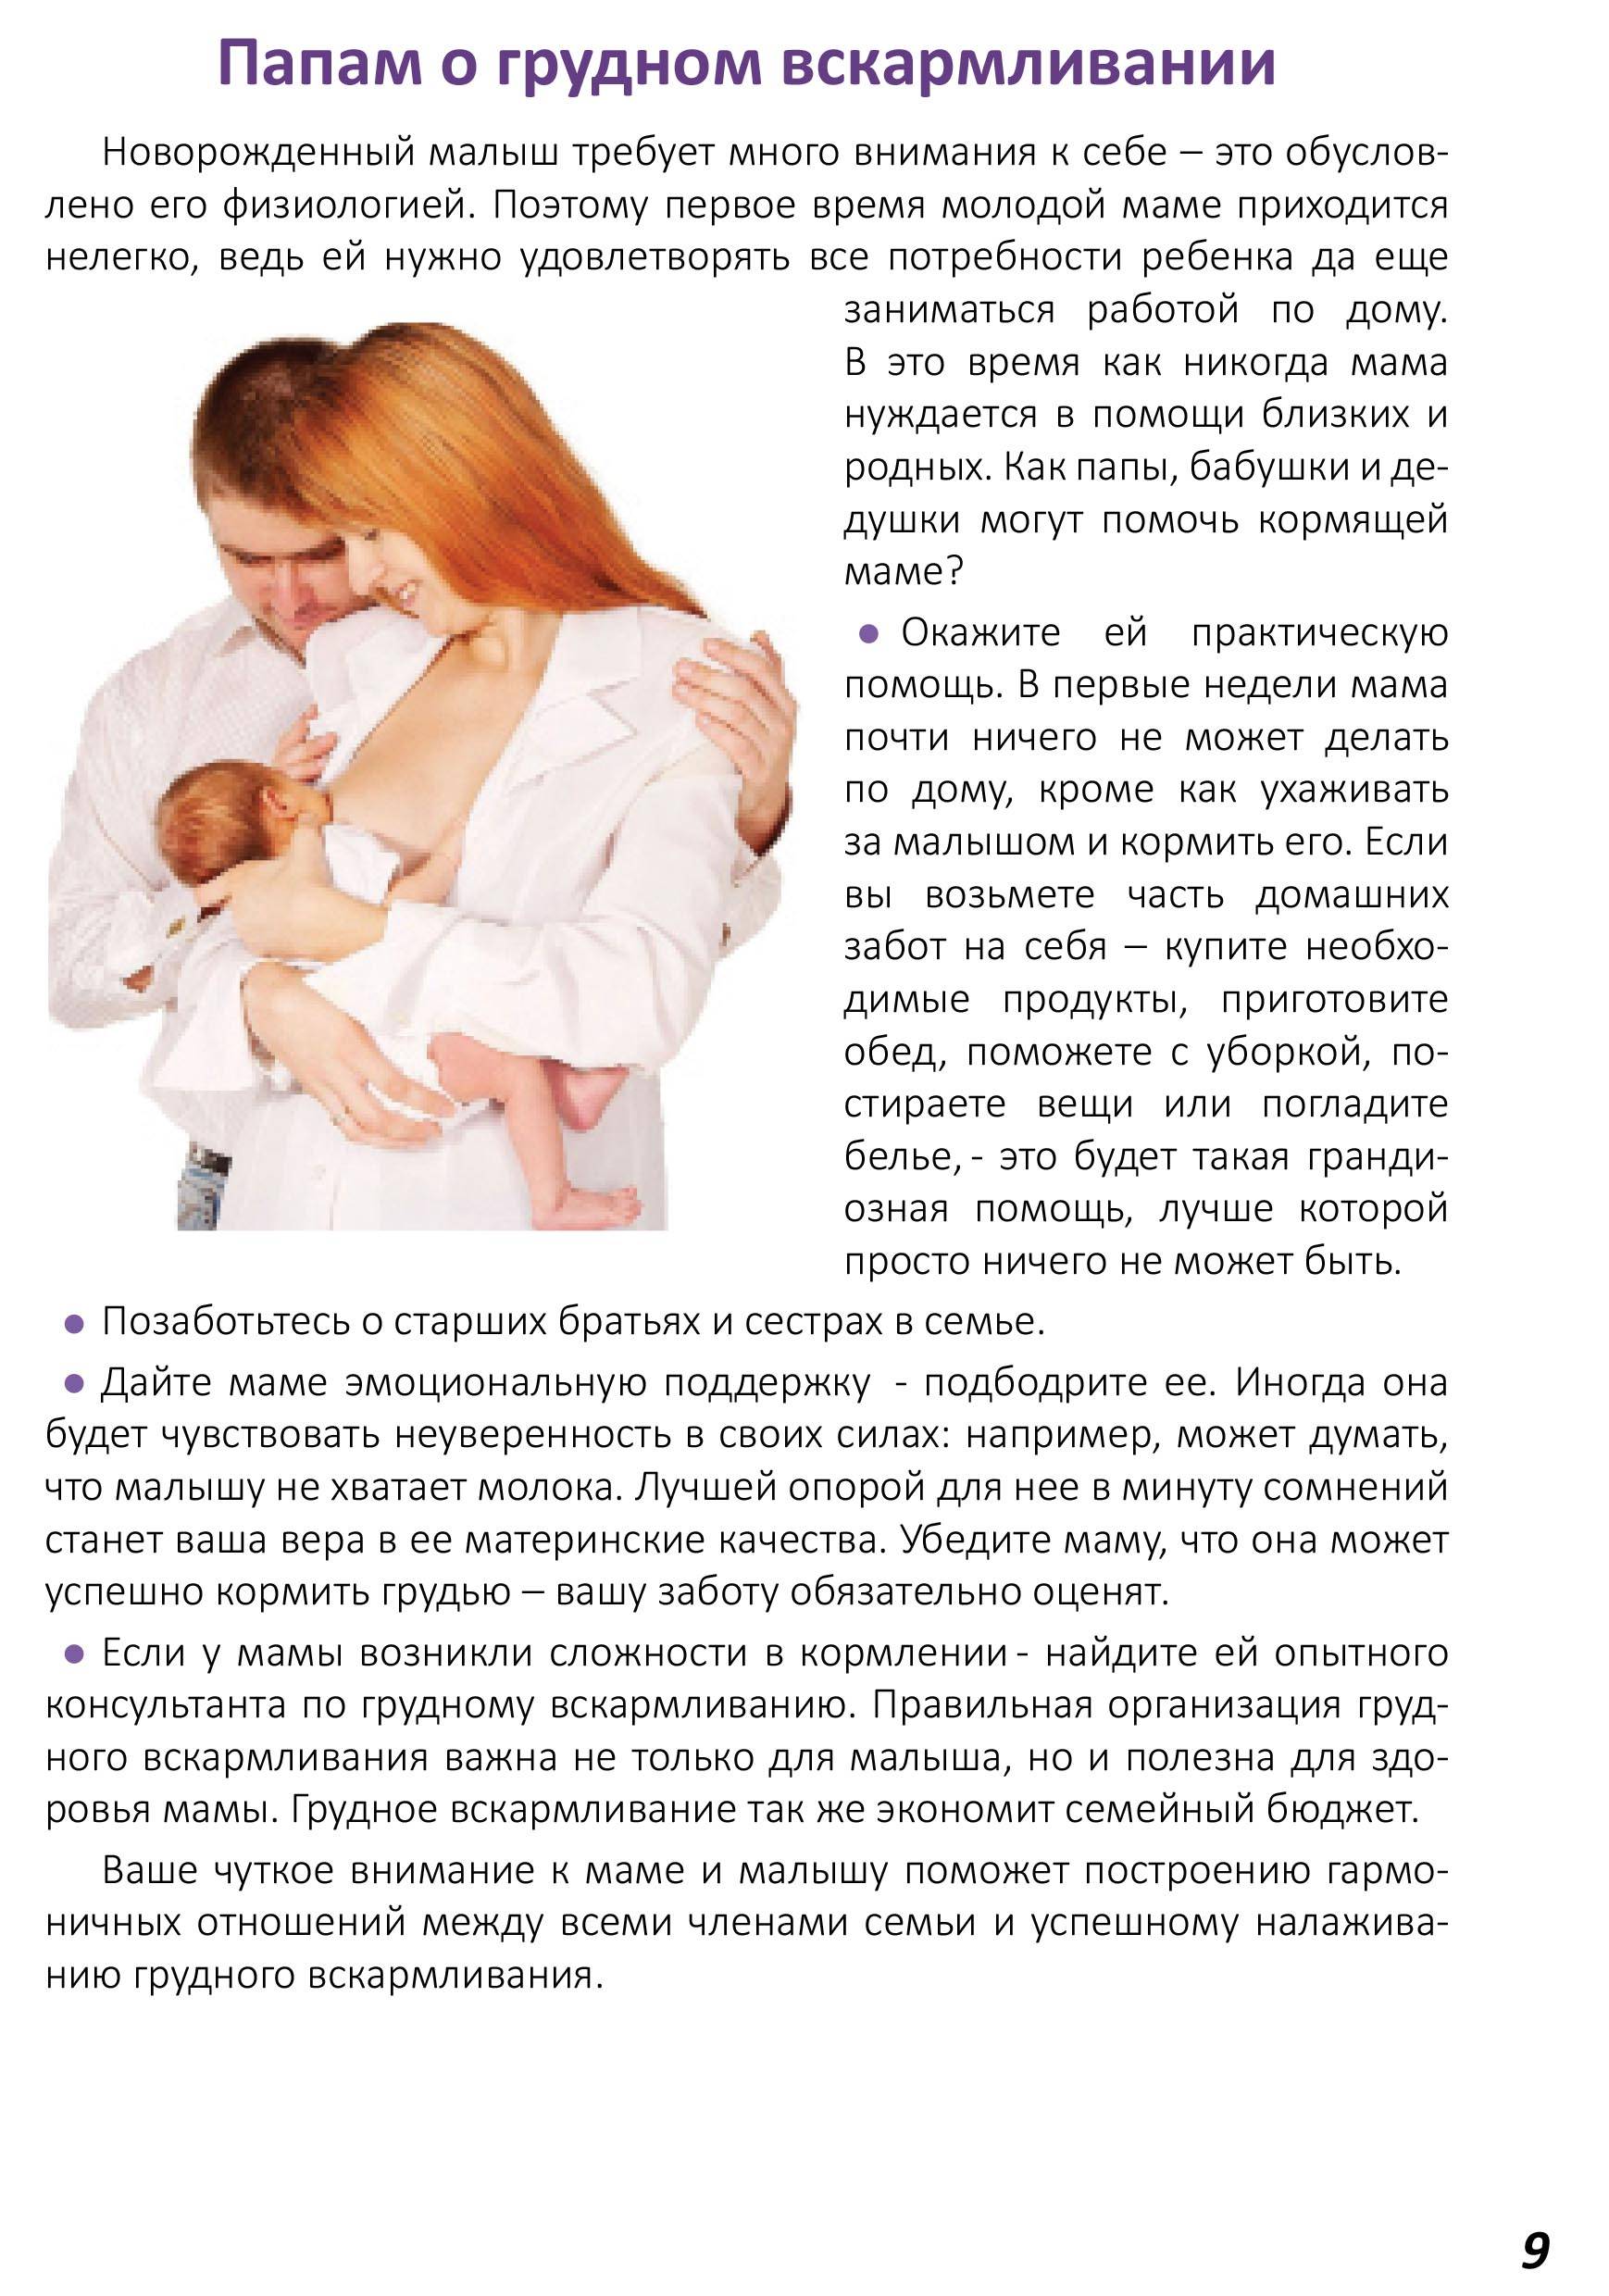 Завершение грудного вскармливания без стресса для малыша и мамы   | материнство - беременность, роды, питание, воспитание